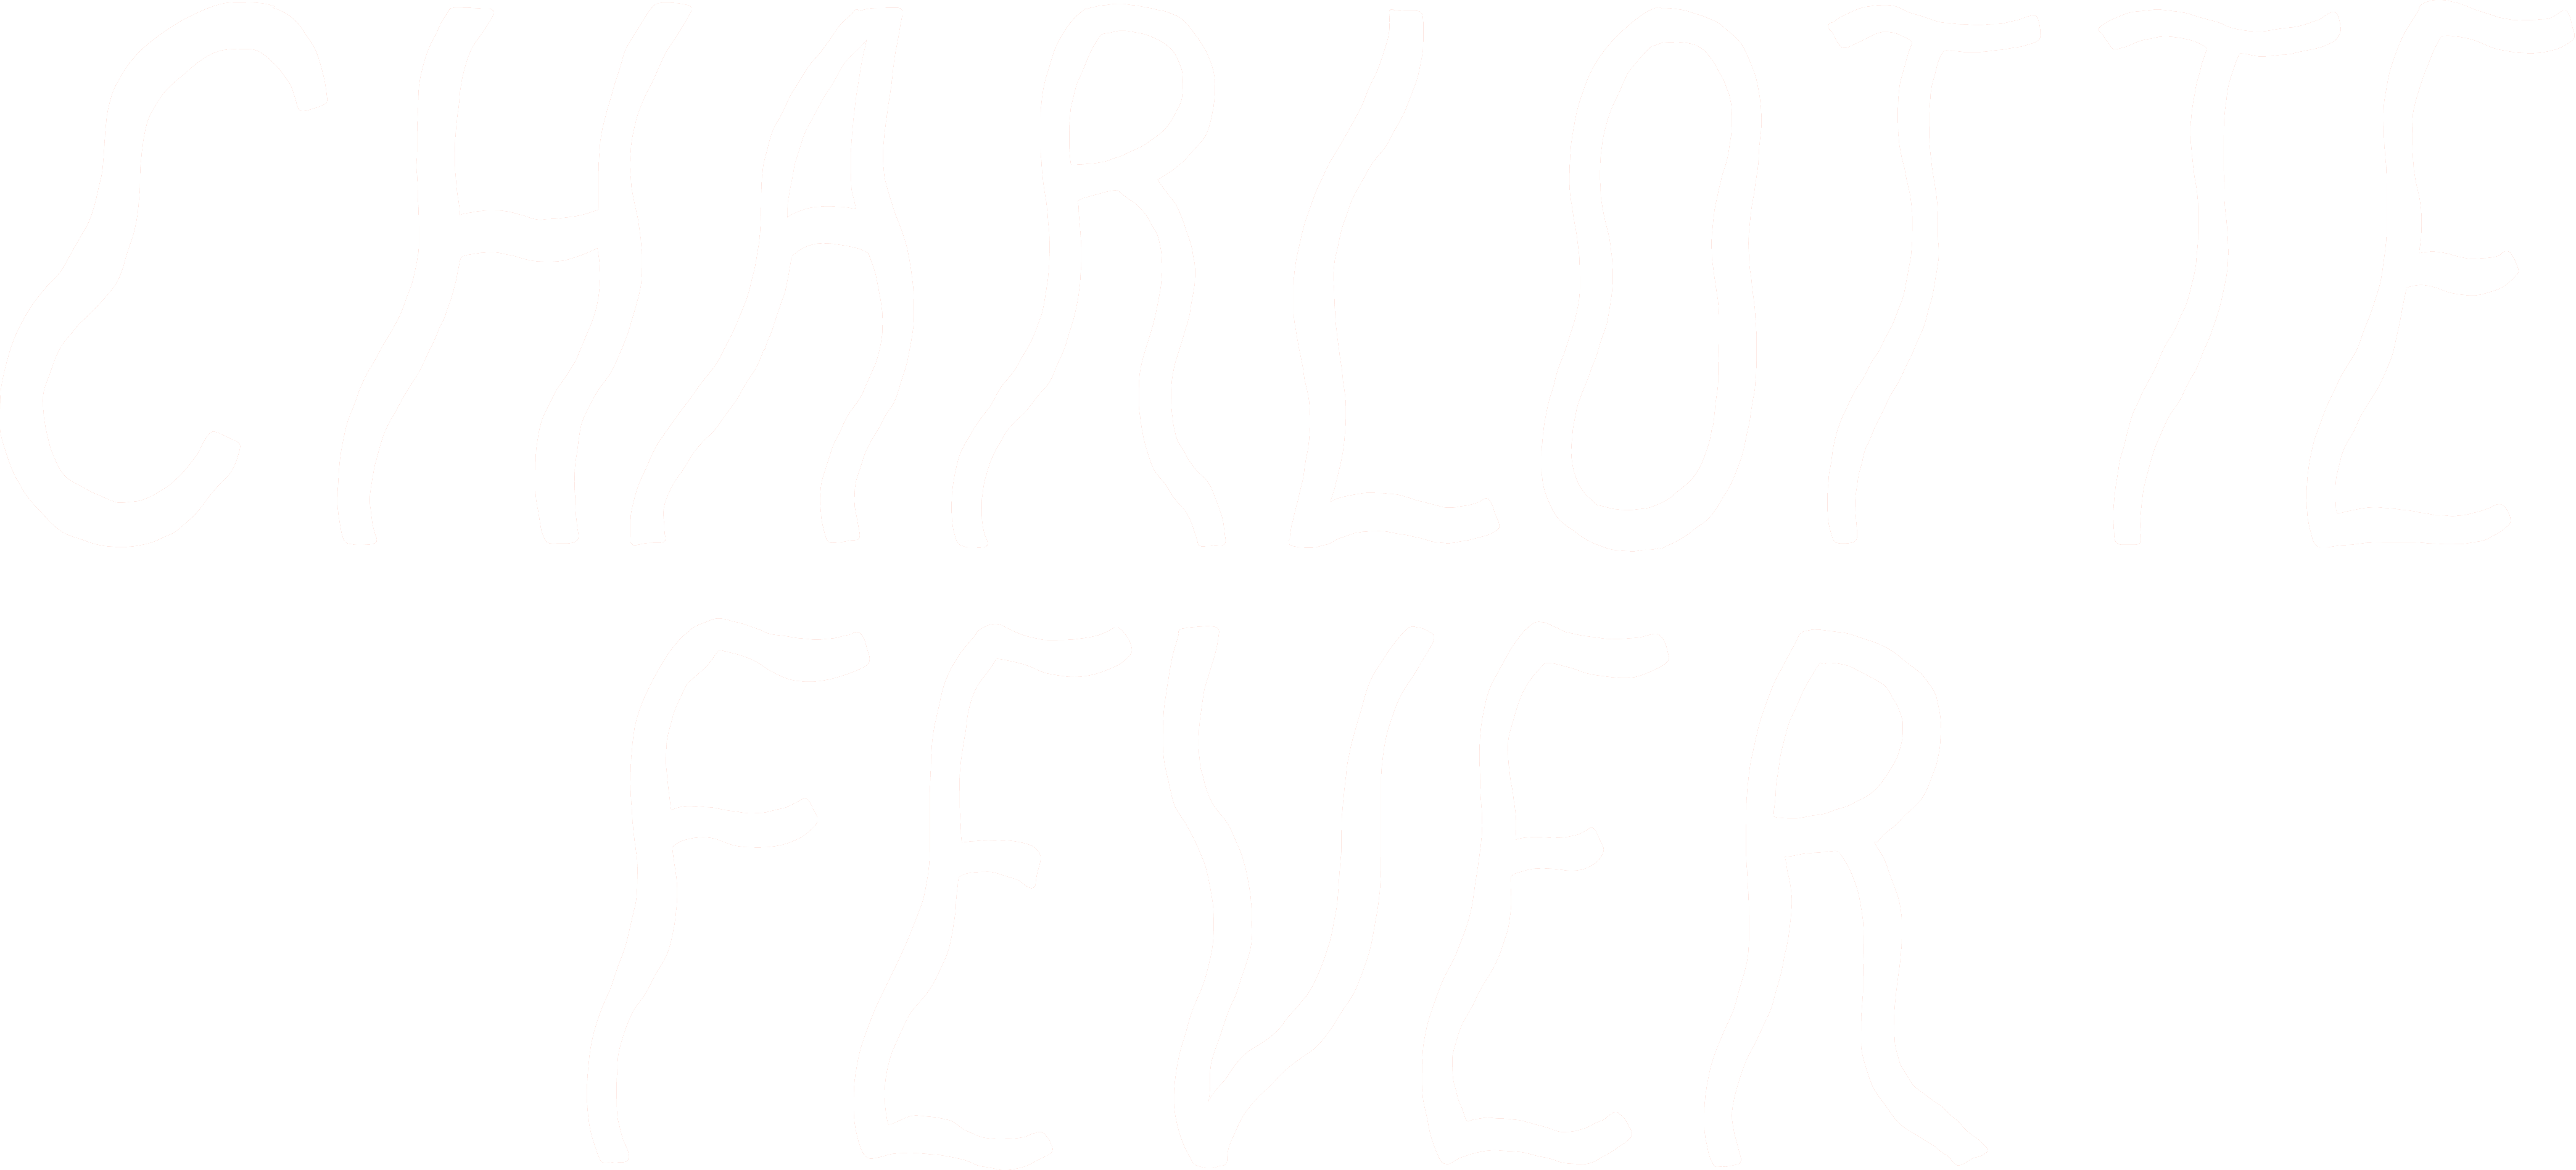 Charlotte Fever